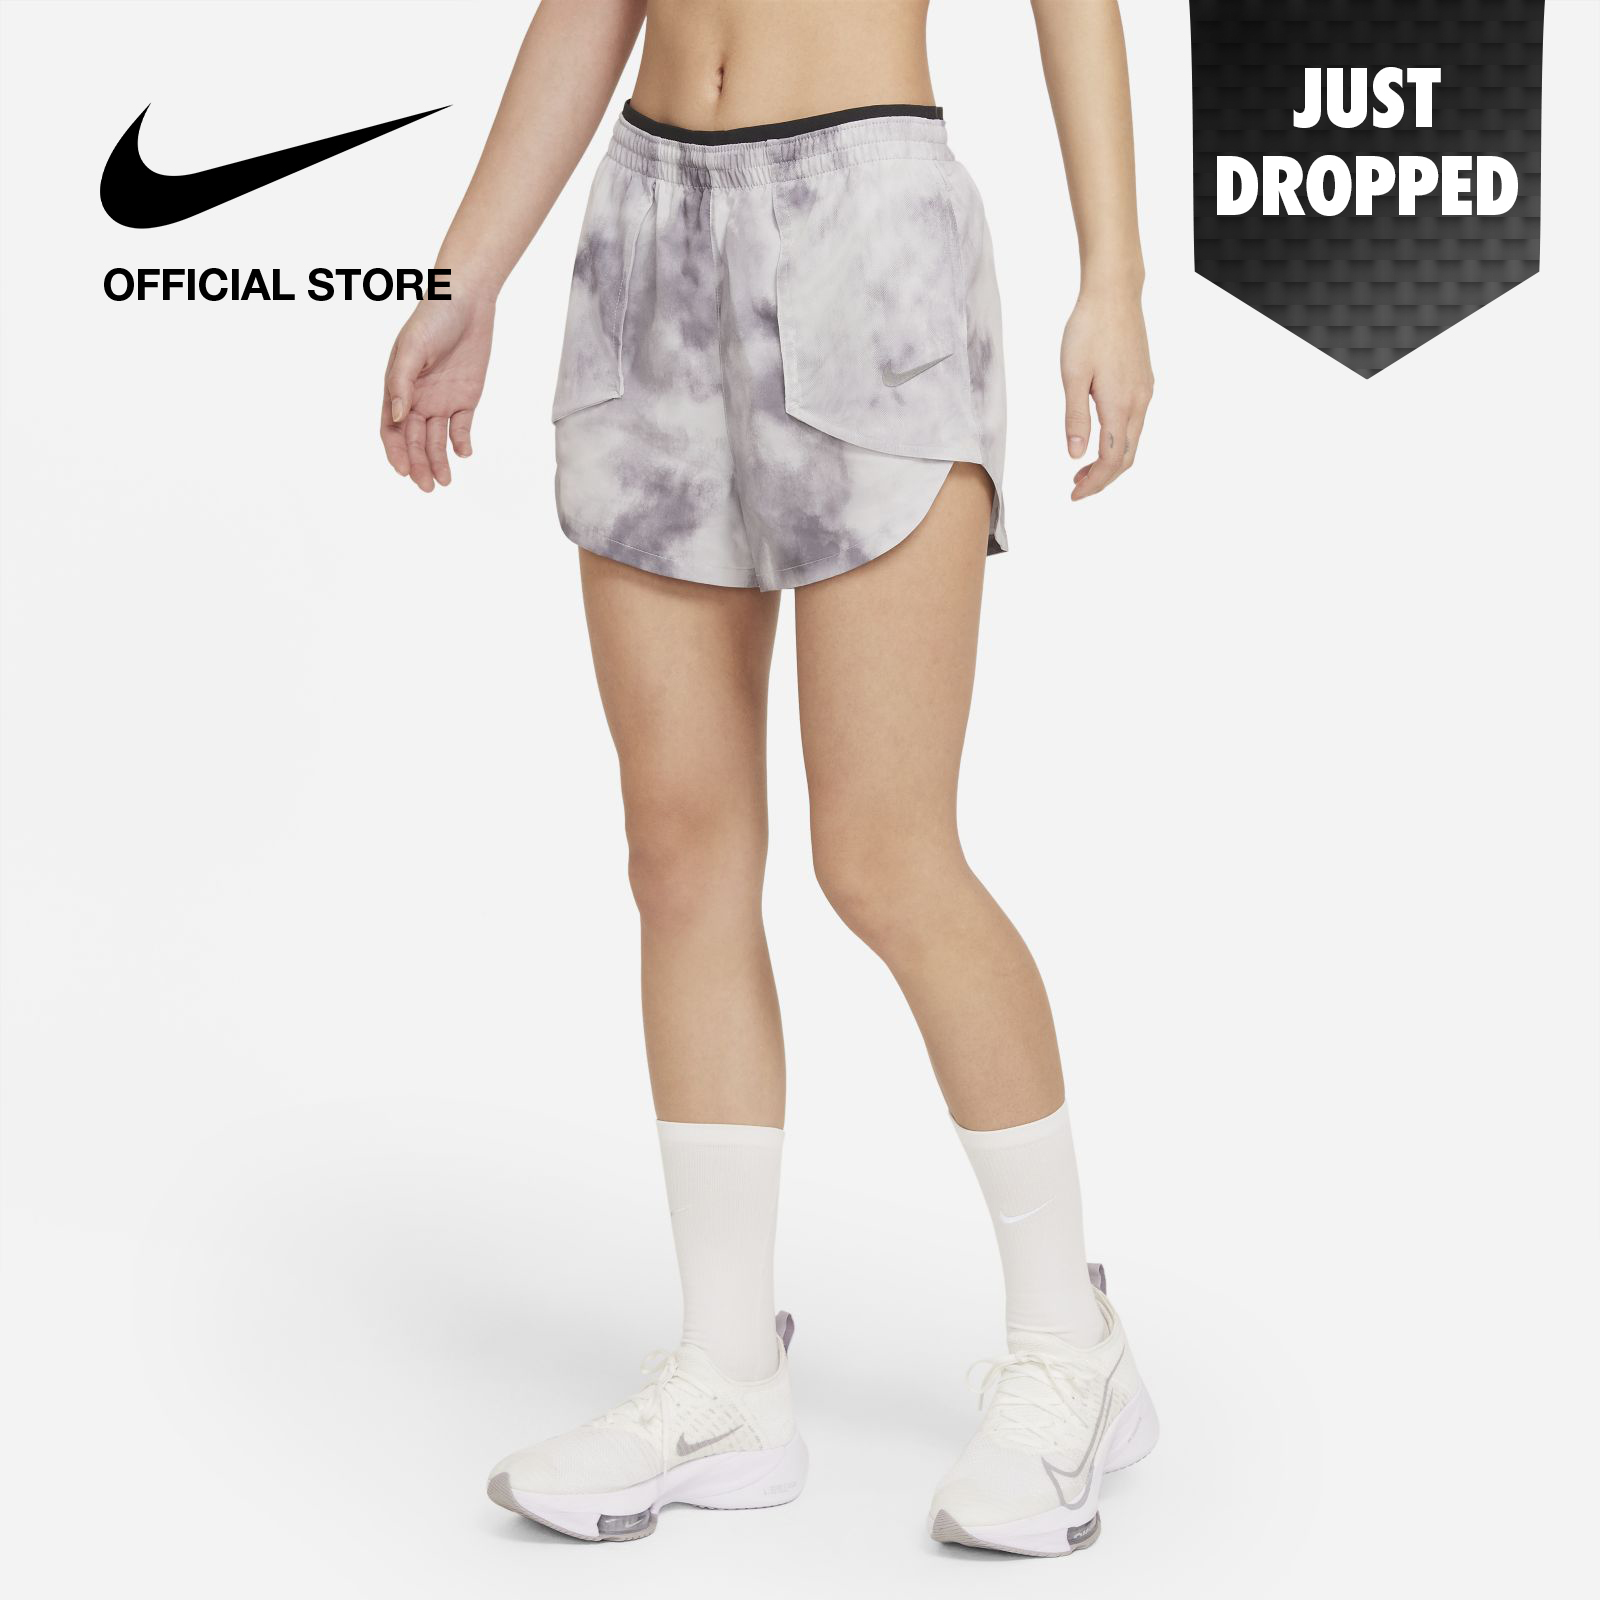 Nike Women's Tempo Luxe Icon Clash Running Short - Light Smoke Grey ไนกี้ กางเกงขาสั้นวิ่งผู้หญิง เทมโป้ ลุกซ์ ไอค่อน แคลช - สีเทา